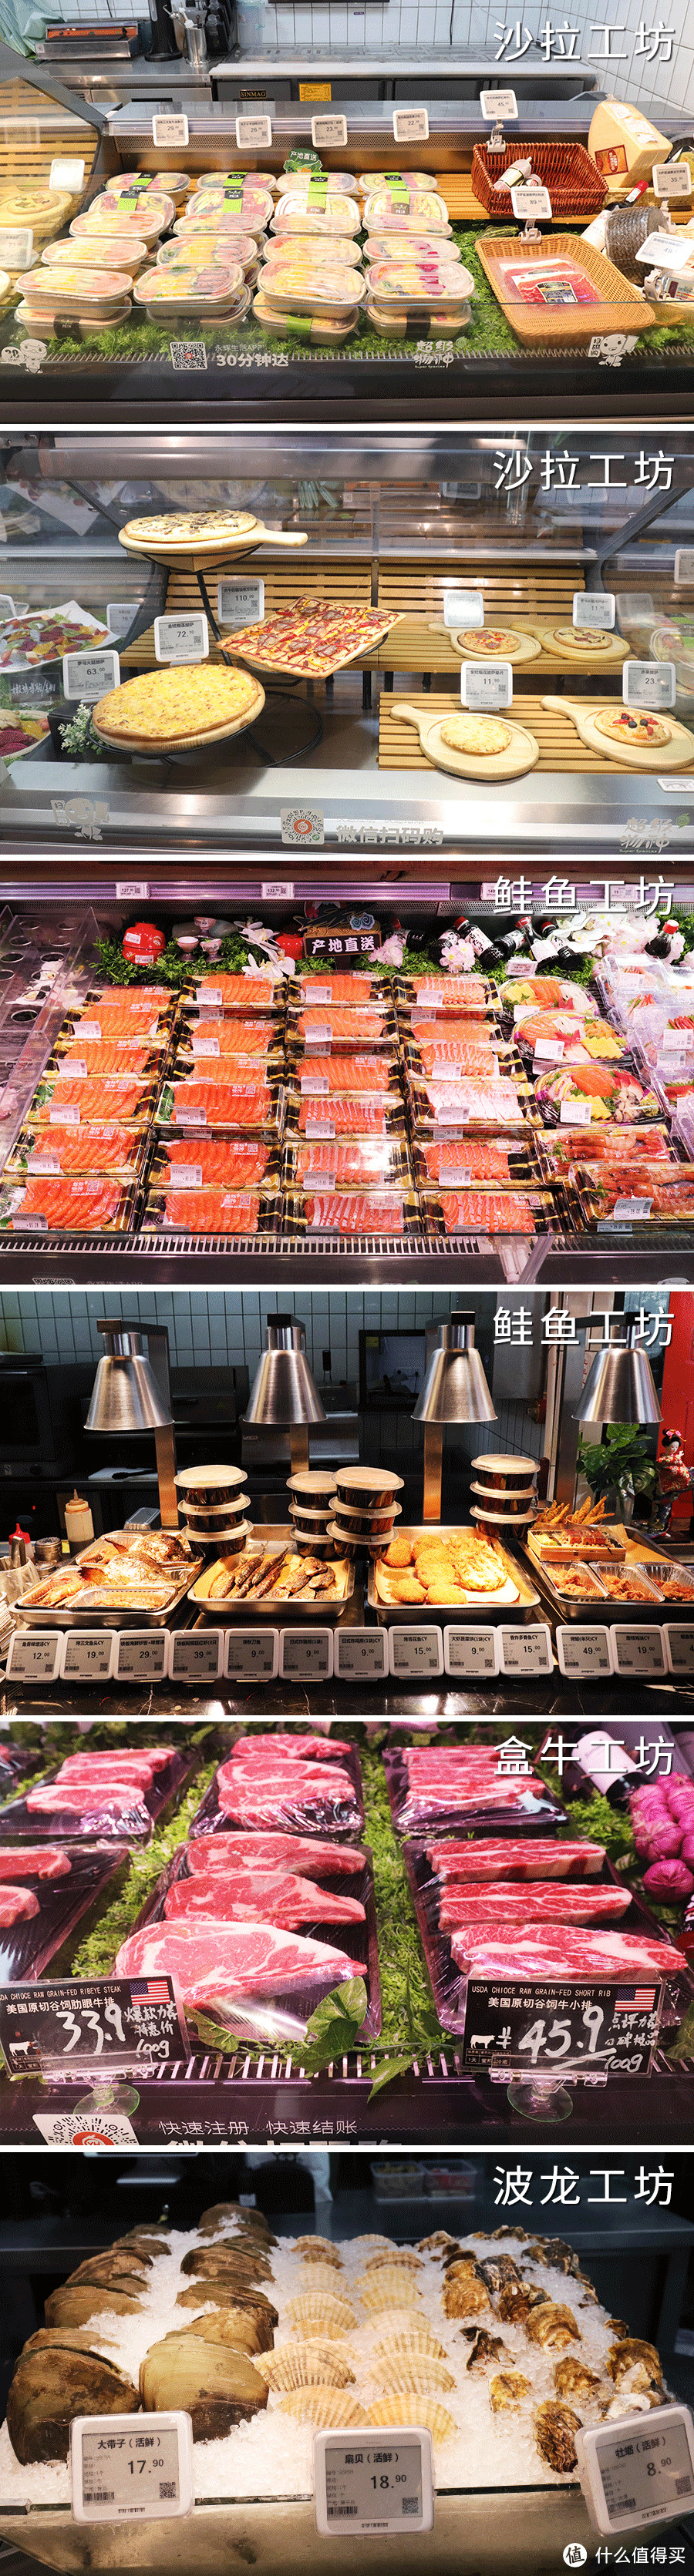 全上海性价比最高的餐厅，藏在这家超市里